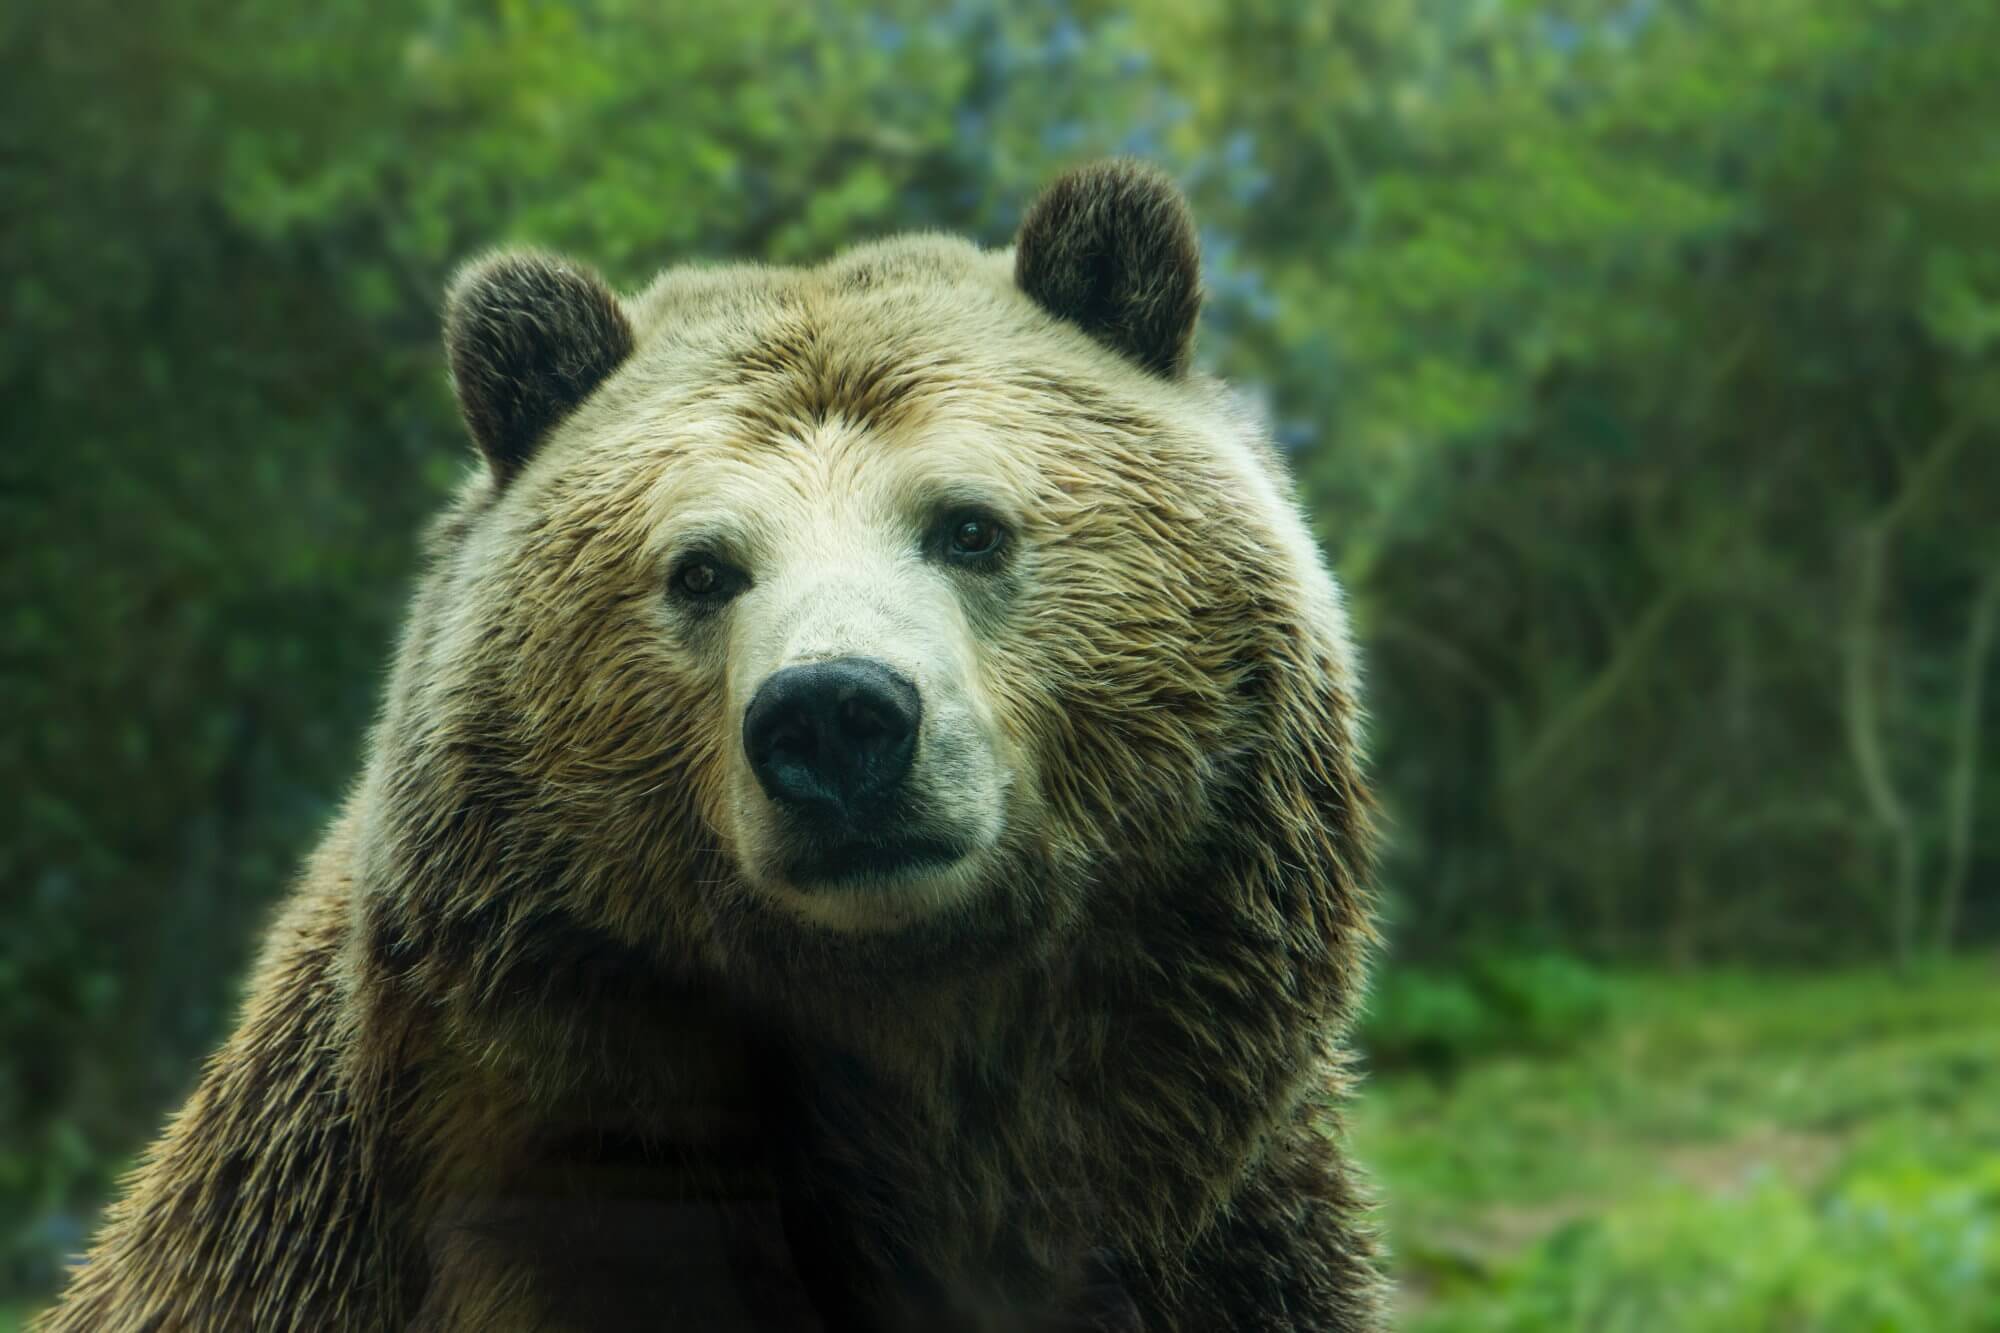 Los osos se hacían más a menudo atacar a la gente. Cuál es la razón?